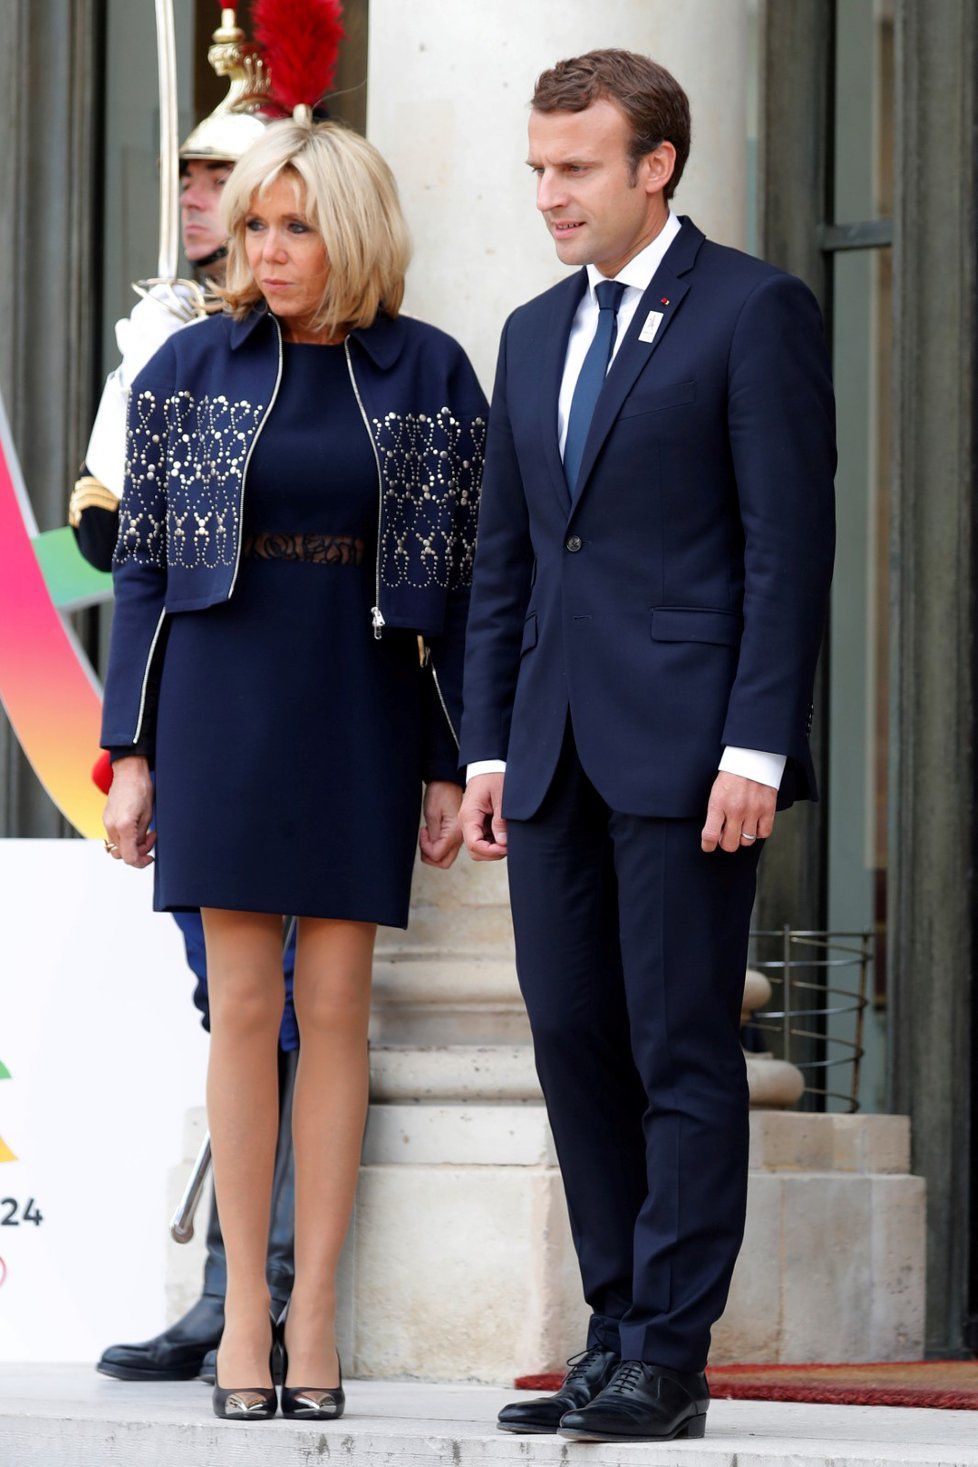 Krátkými šaty je první dáma Francie Brigitte Macronová pověstná. Její věk, 65 let, by jí hádal málokdo.